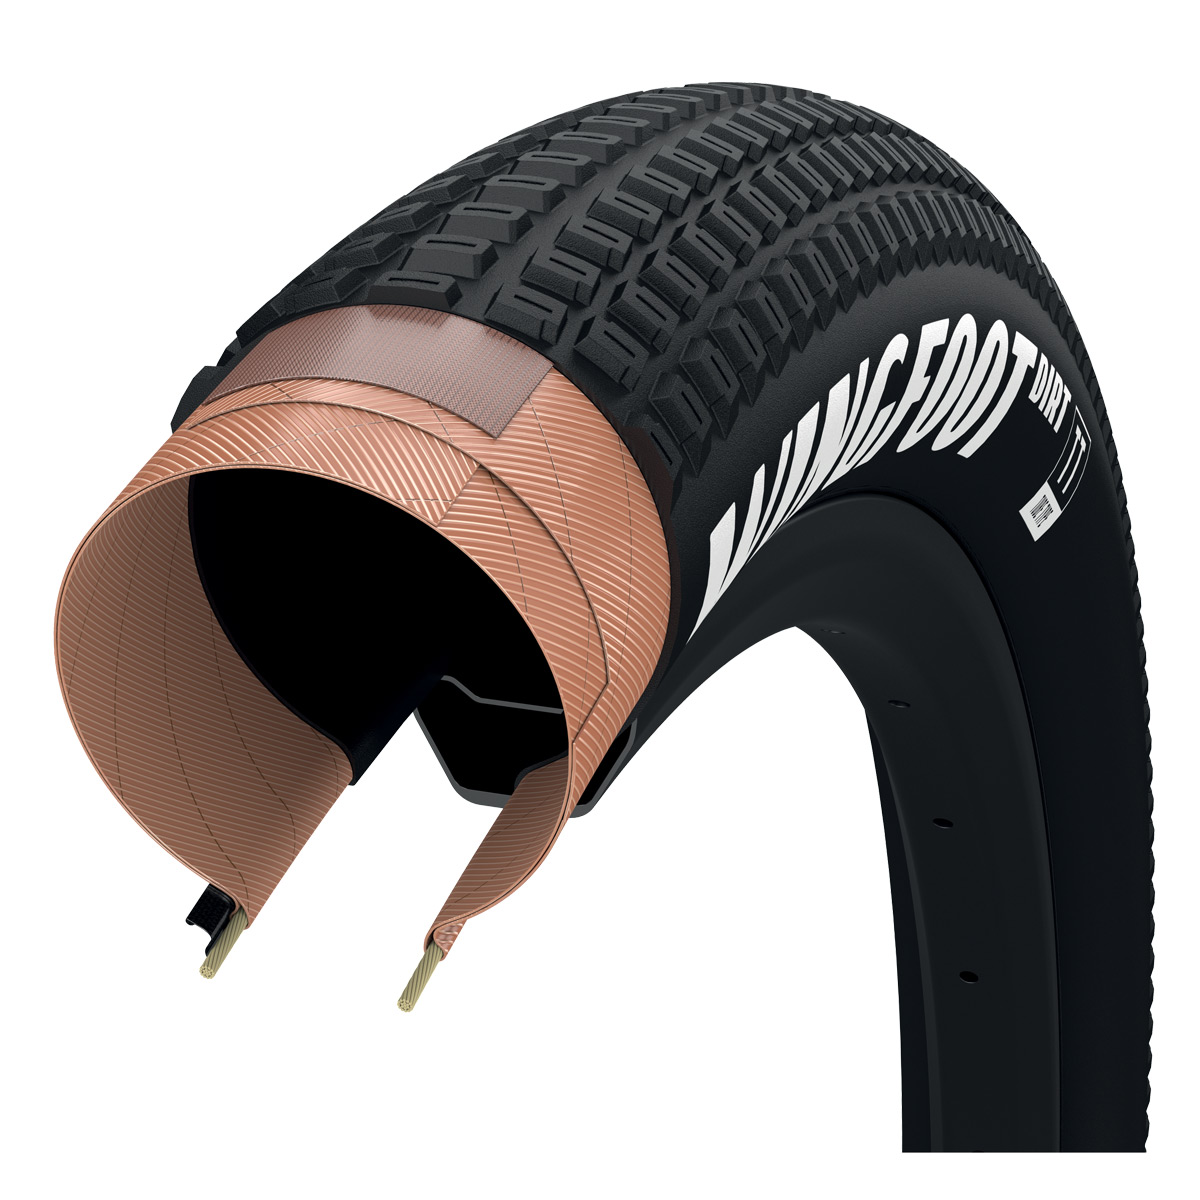 Productfoto van Goodyear Wingfoot Dirt - Tube Type - Vouwband - 26x2.20&quot; - zwart